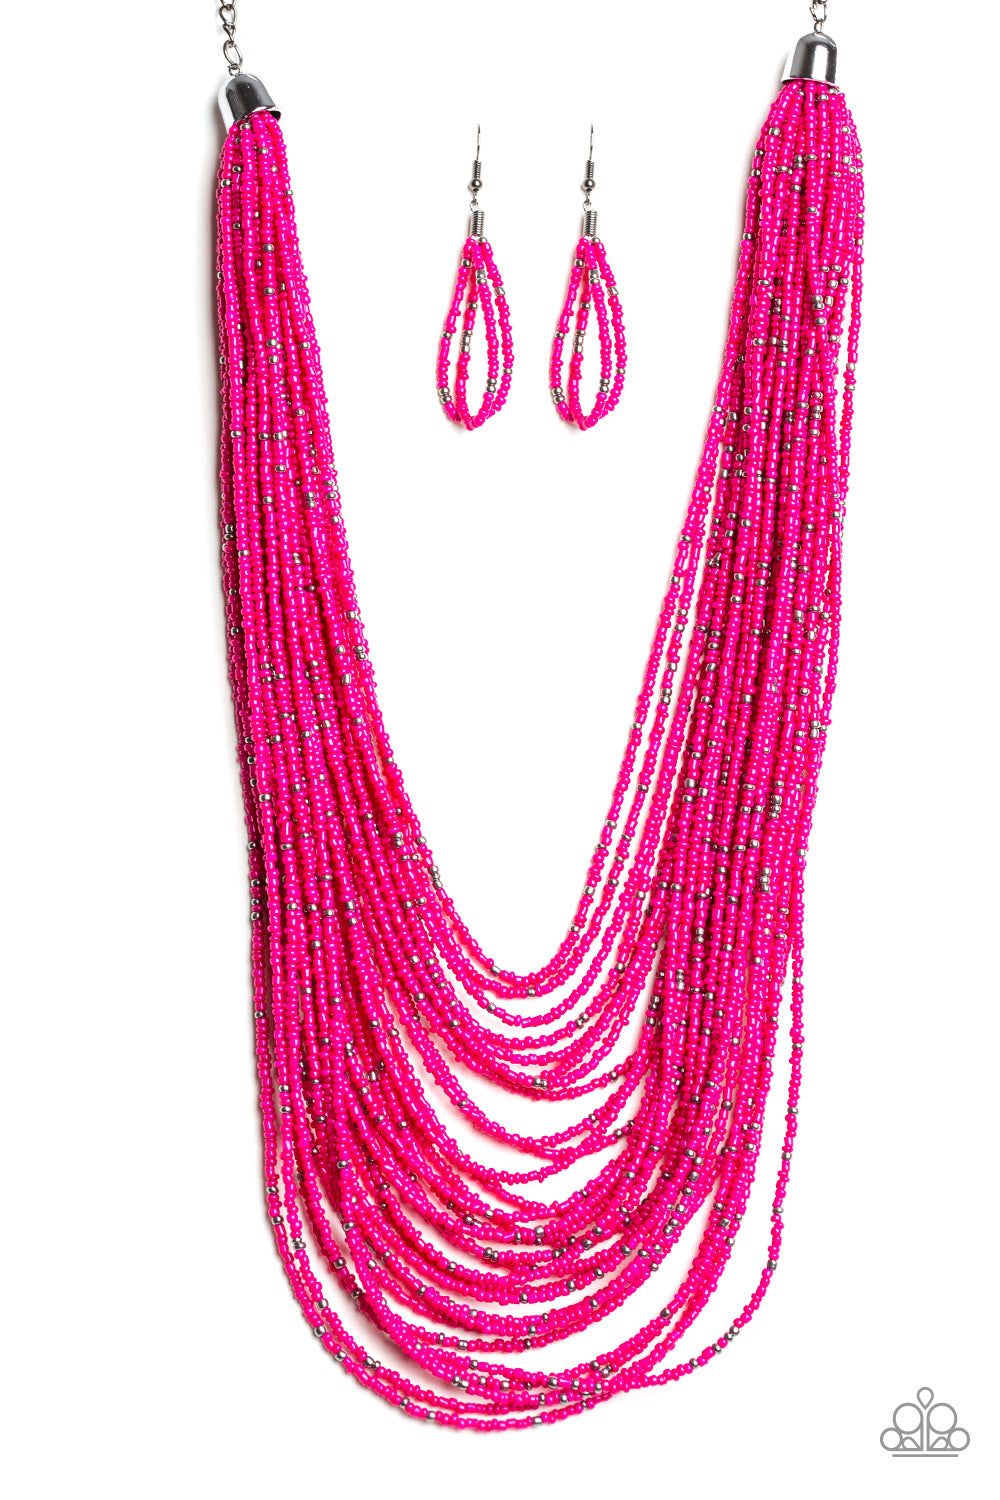 Rio Rainforest Pink Paparazzi Necklace Cashmere Pink Jewels - Cashmere Pink Jewels & Accessories, Cashmere Pink Jewels & Accessories - Paparazzi